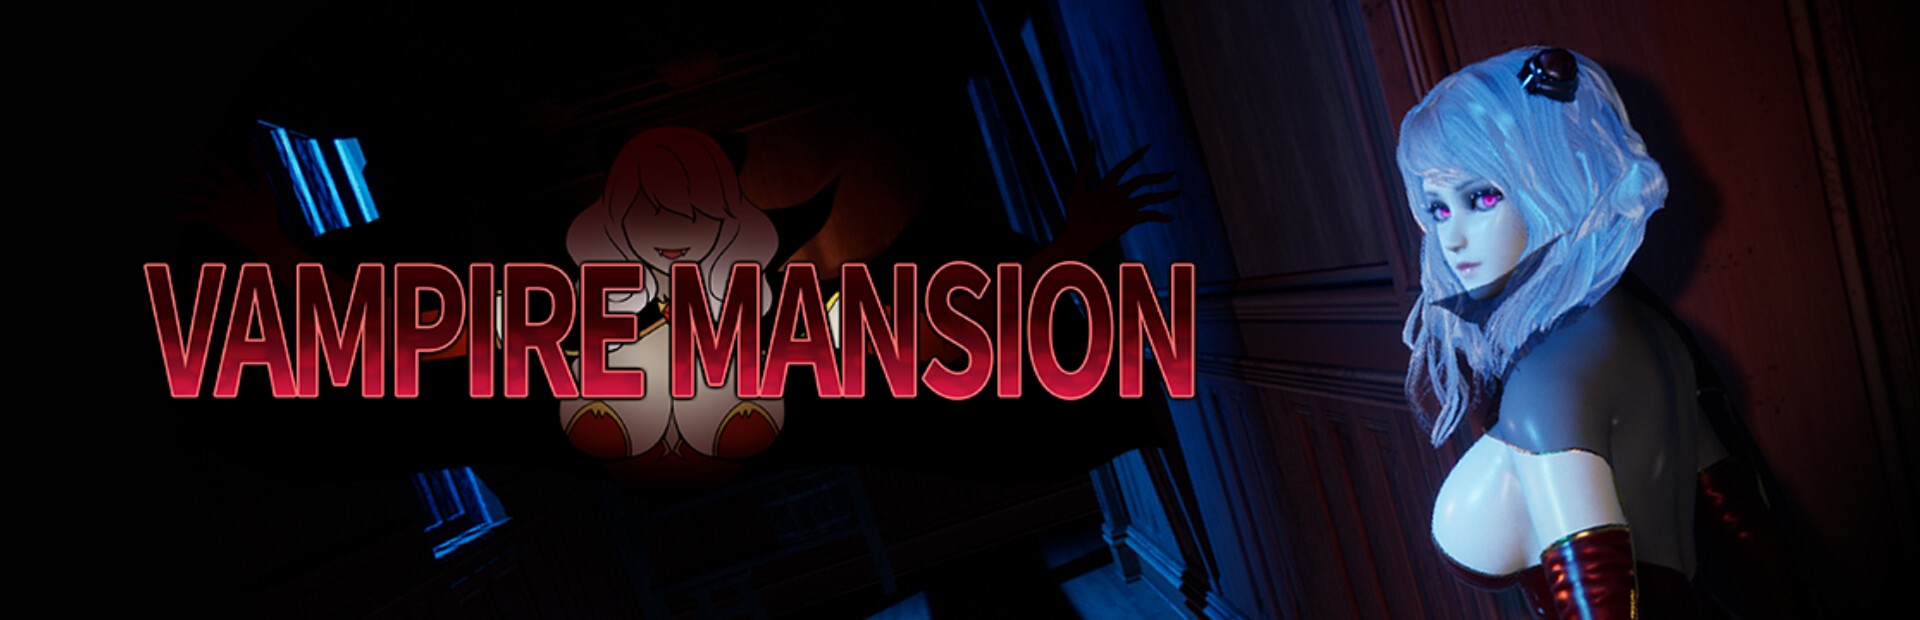 Vampire Mansion poster